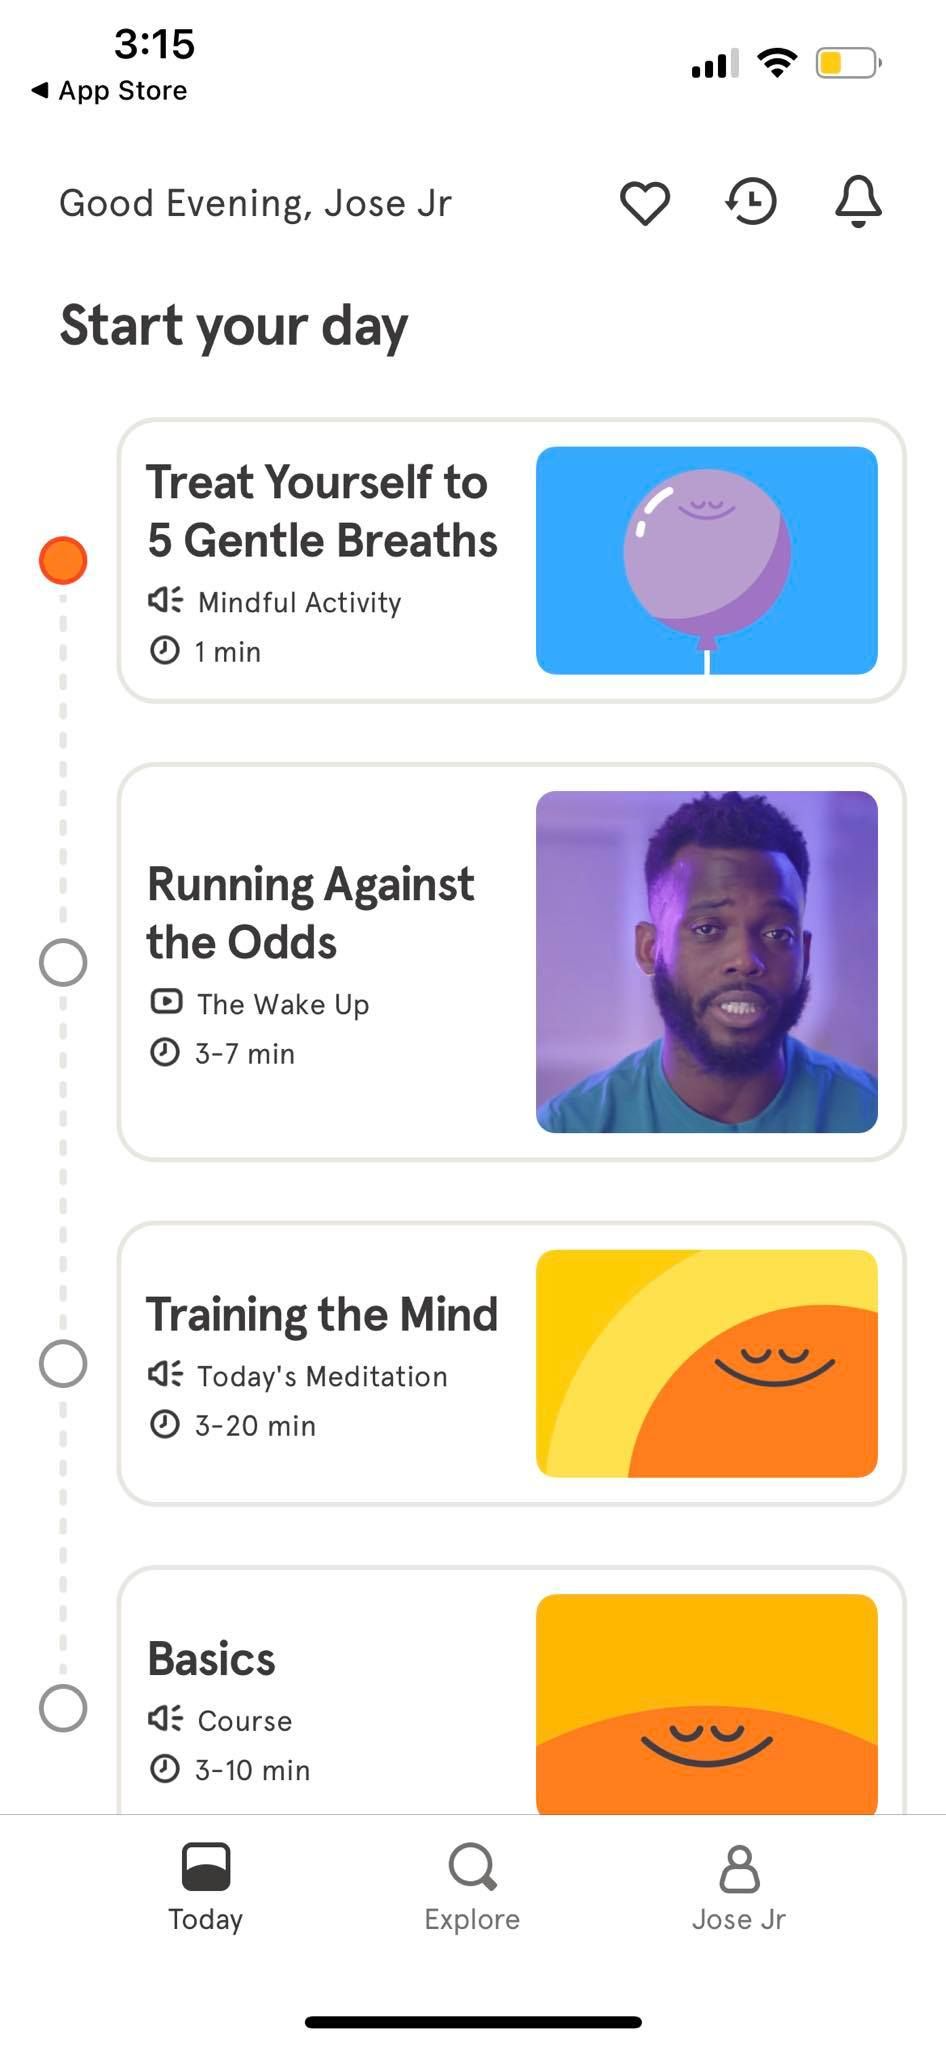 Beginner Meditation Videos on Headspace